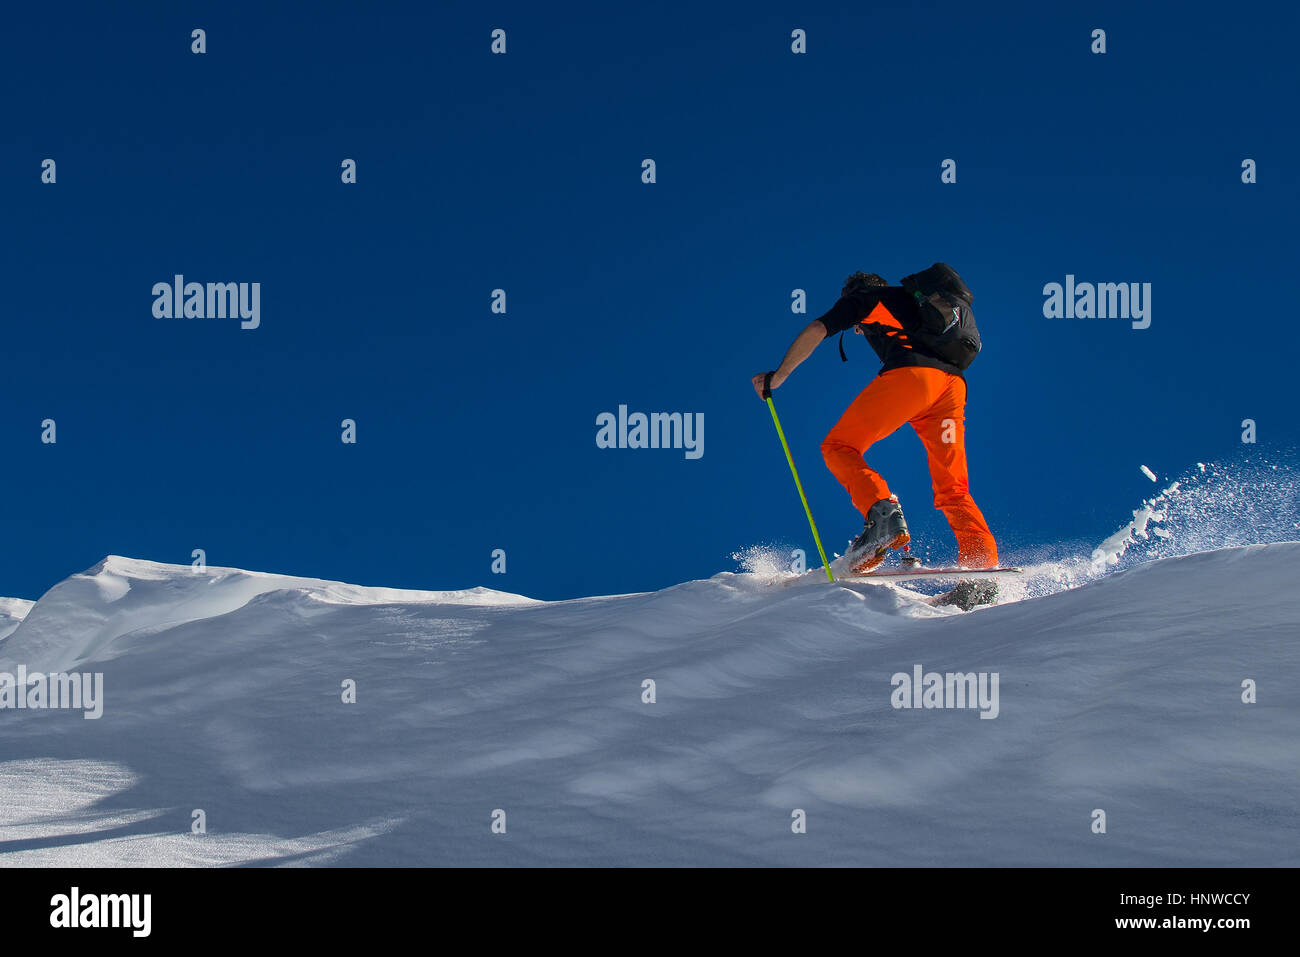 Un homme la skieuse alpine monter sur les skis et les peaux dans la neige Banque D'Images